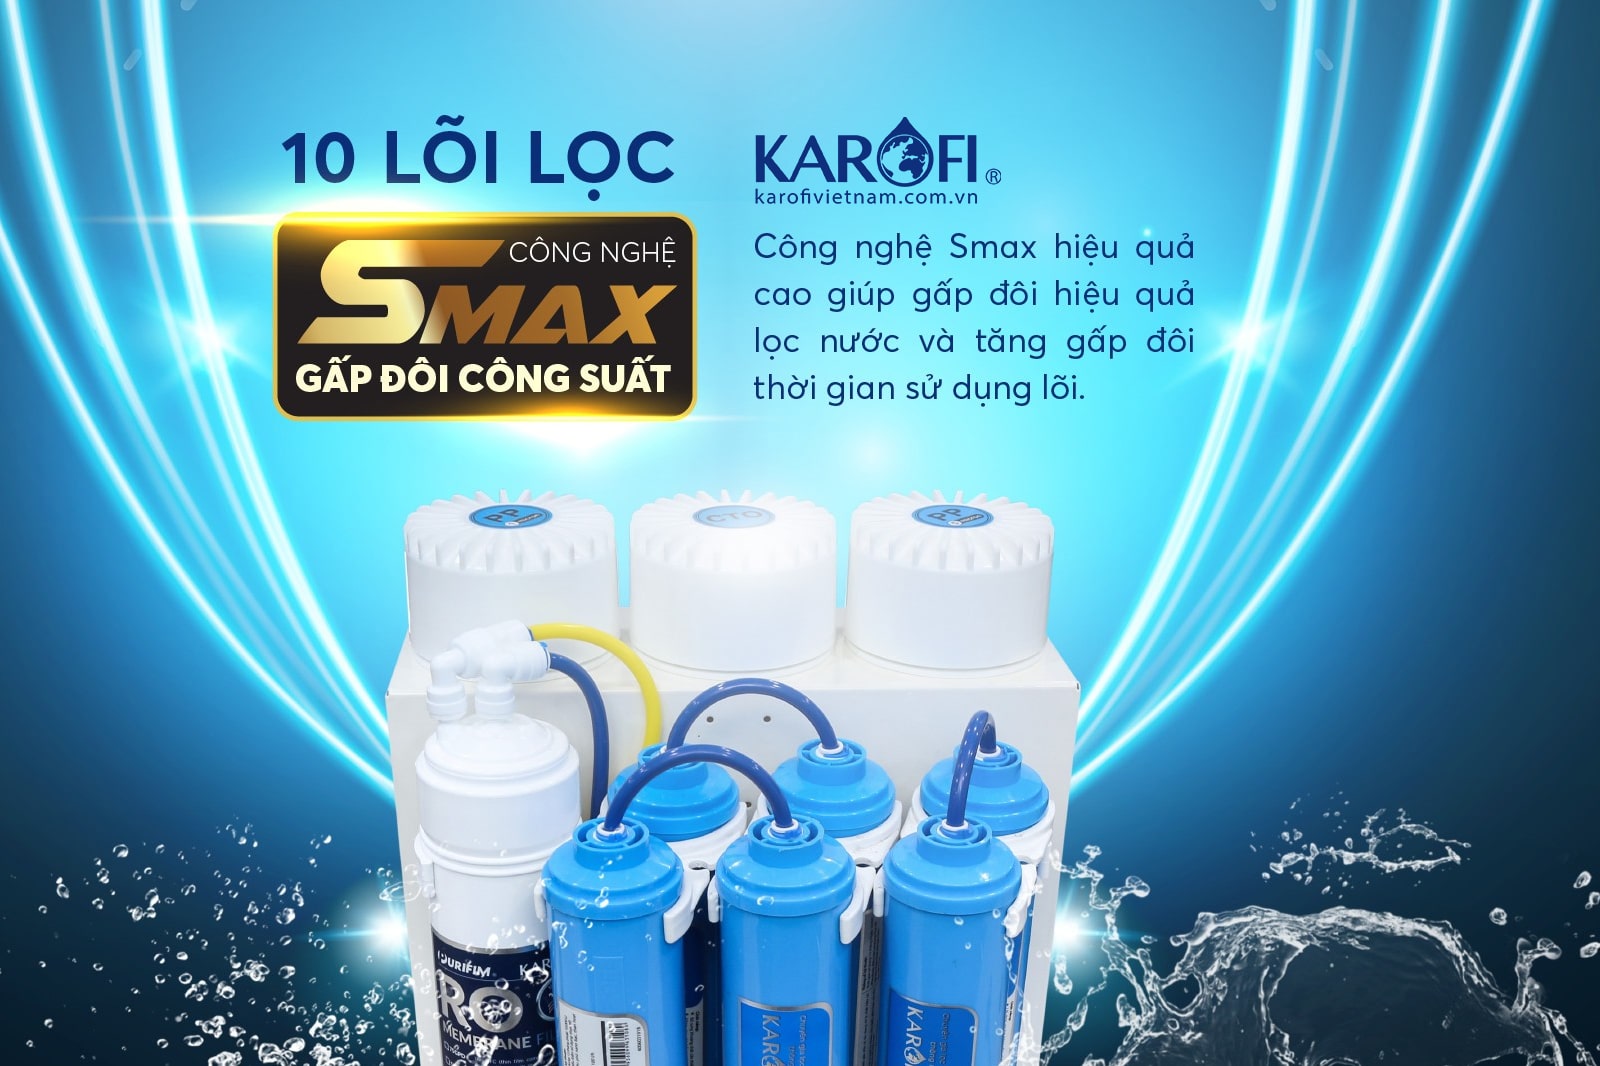 Máy lọc nước Karofi KAQ-U03 tích hợp công nghệ Smax